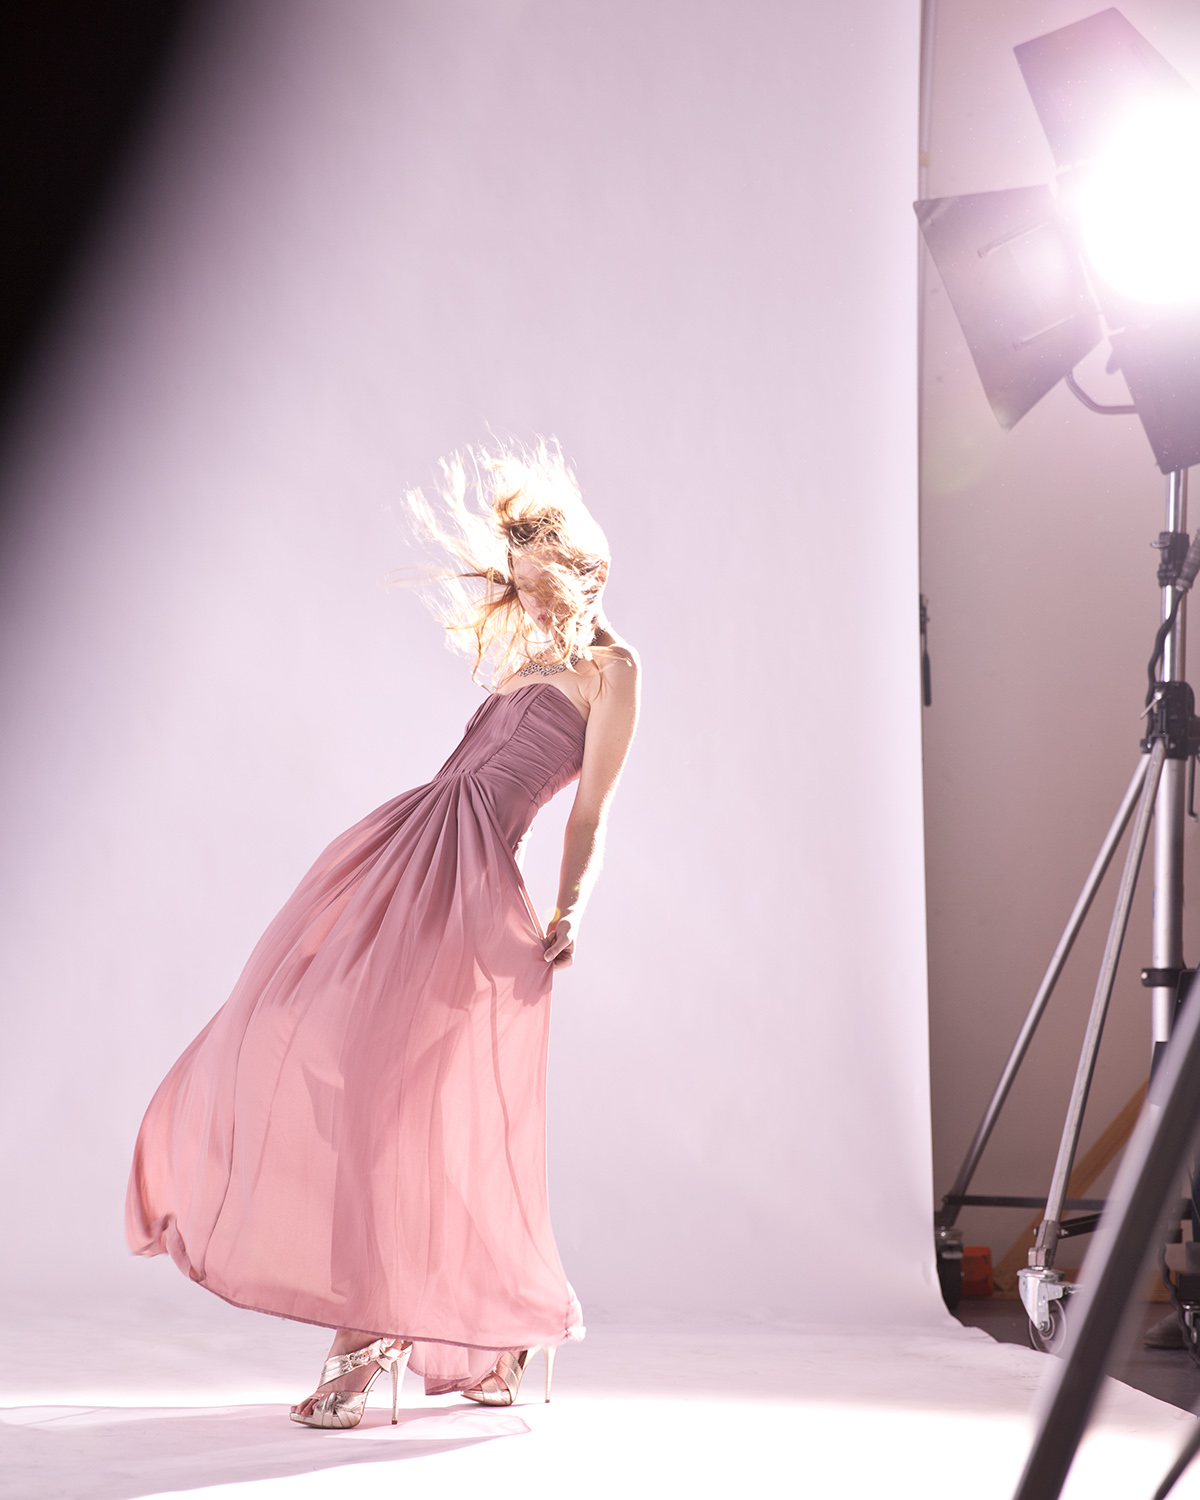 backstage moda longdress pink girl beauty video daylight ied chic blonde